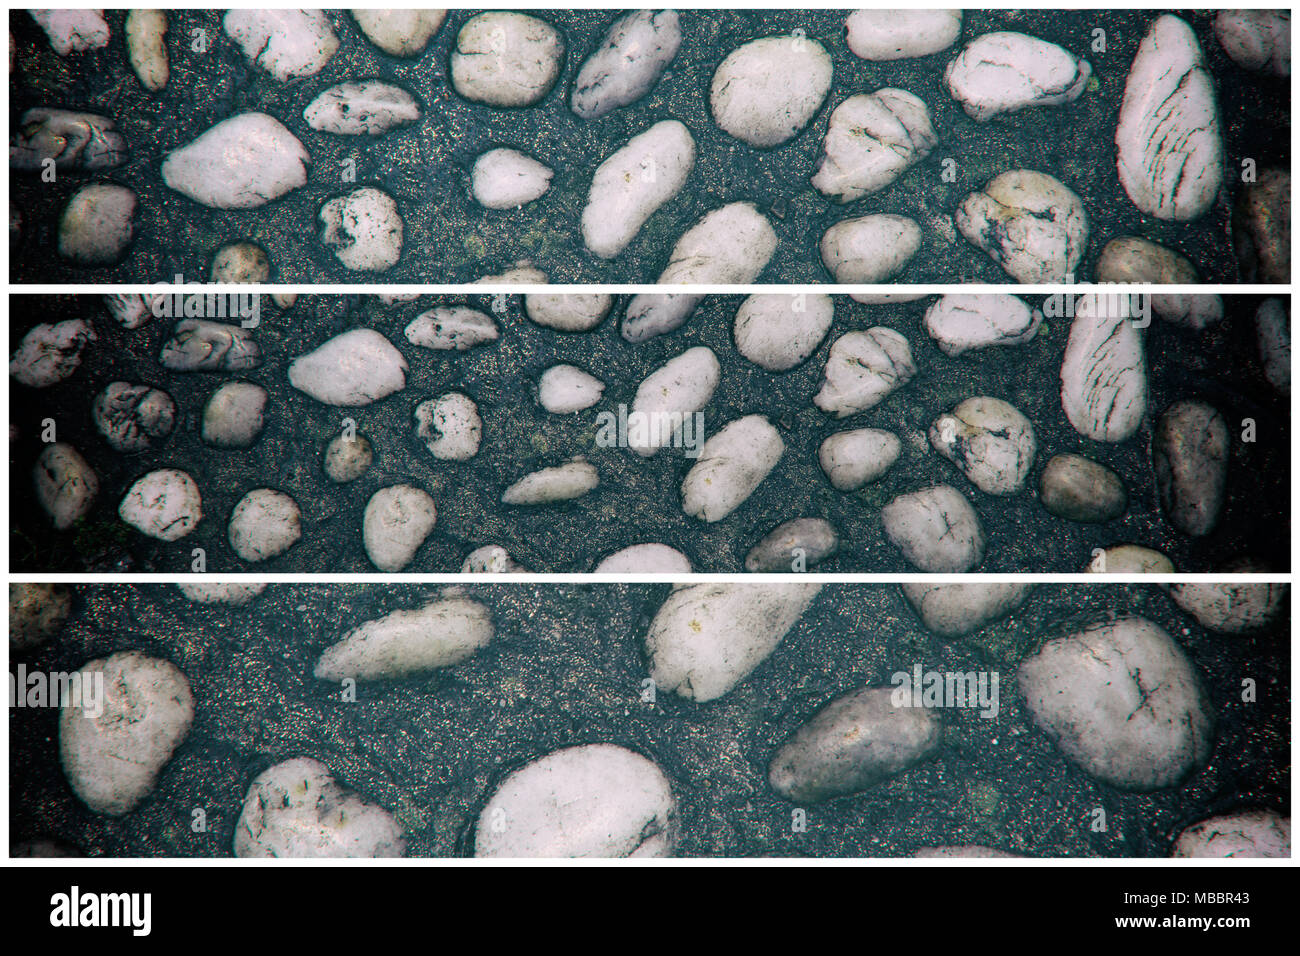 Stein Textur, rock Oberfläche, Kiesel Hintergrund für Website oder mobile Geräte. Stockfoto